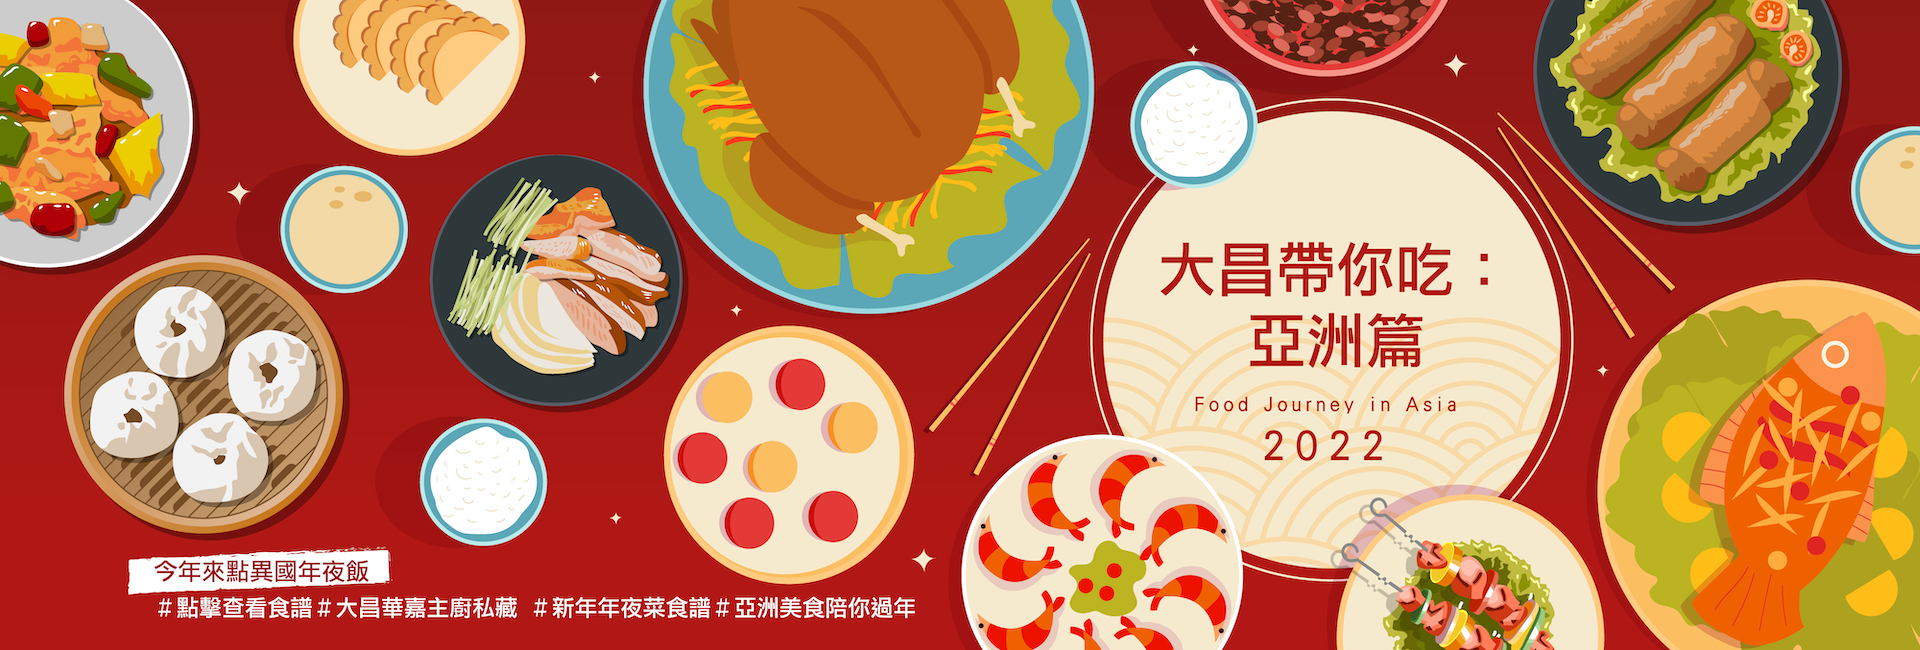 2022_Asia food recipe